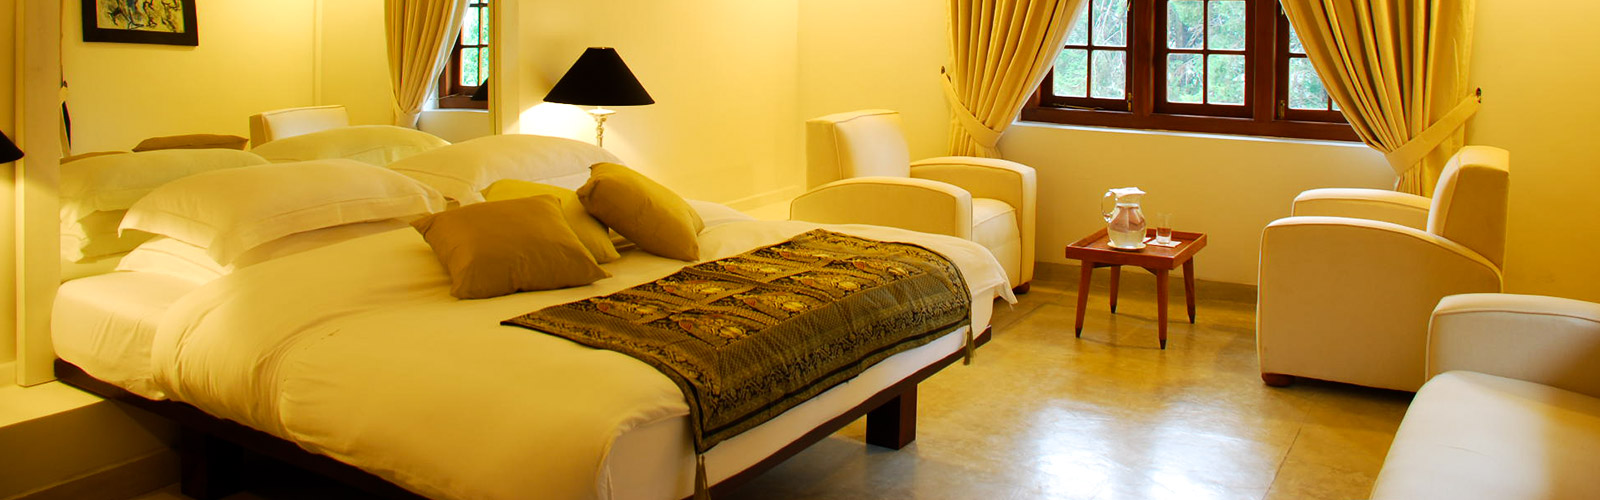 Hotels in Sri Lanka - Jetwing Warwick Gardens